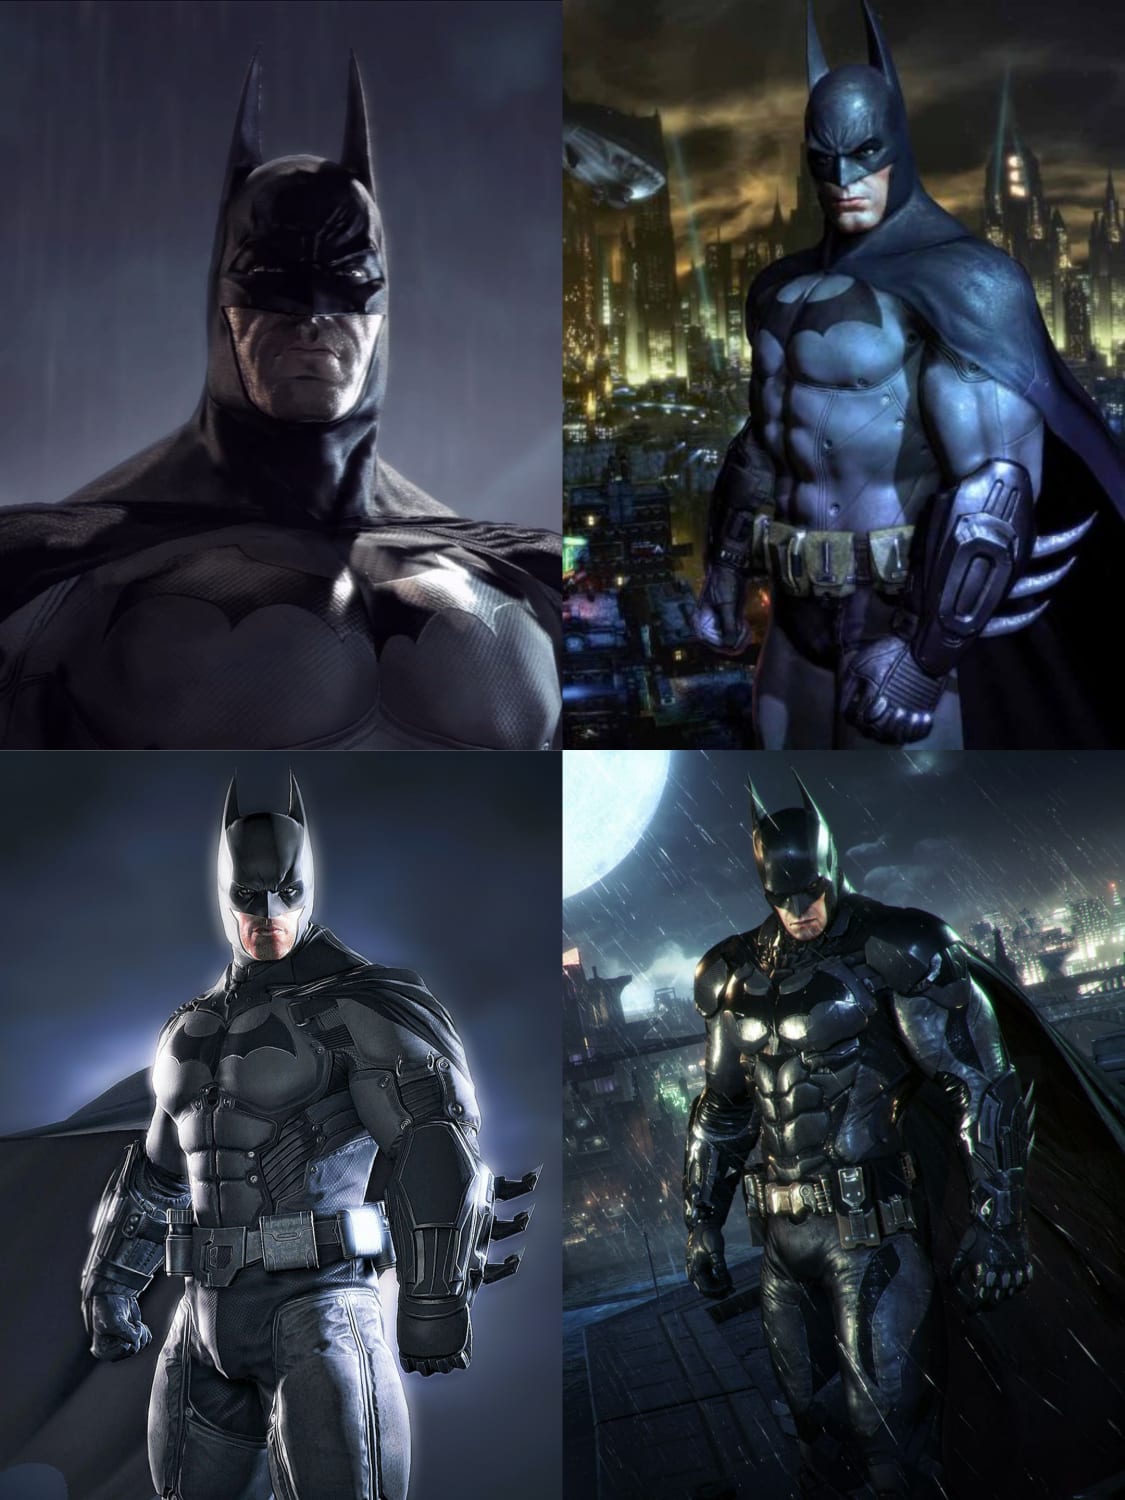 Which Batman looks the best? For me it's Arkham City Batman.